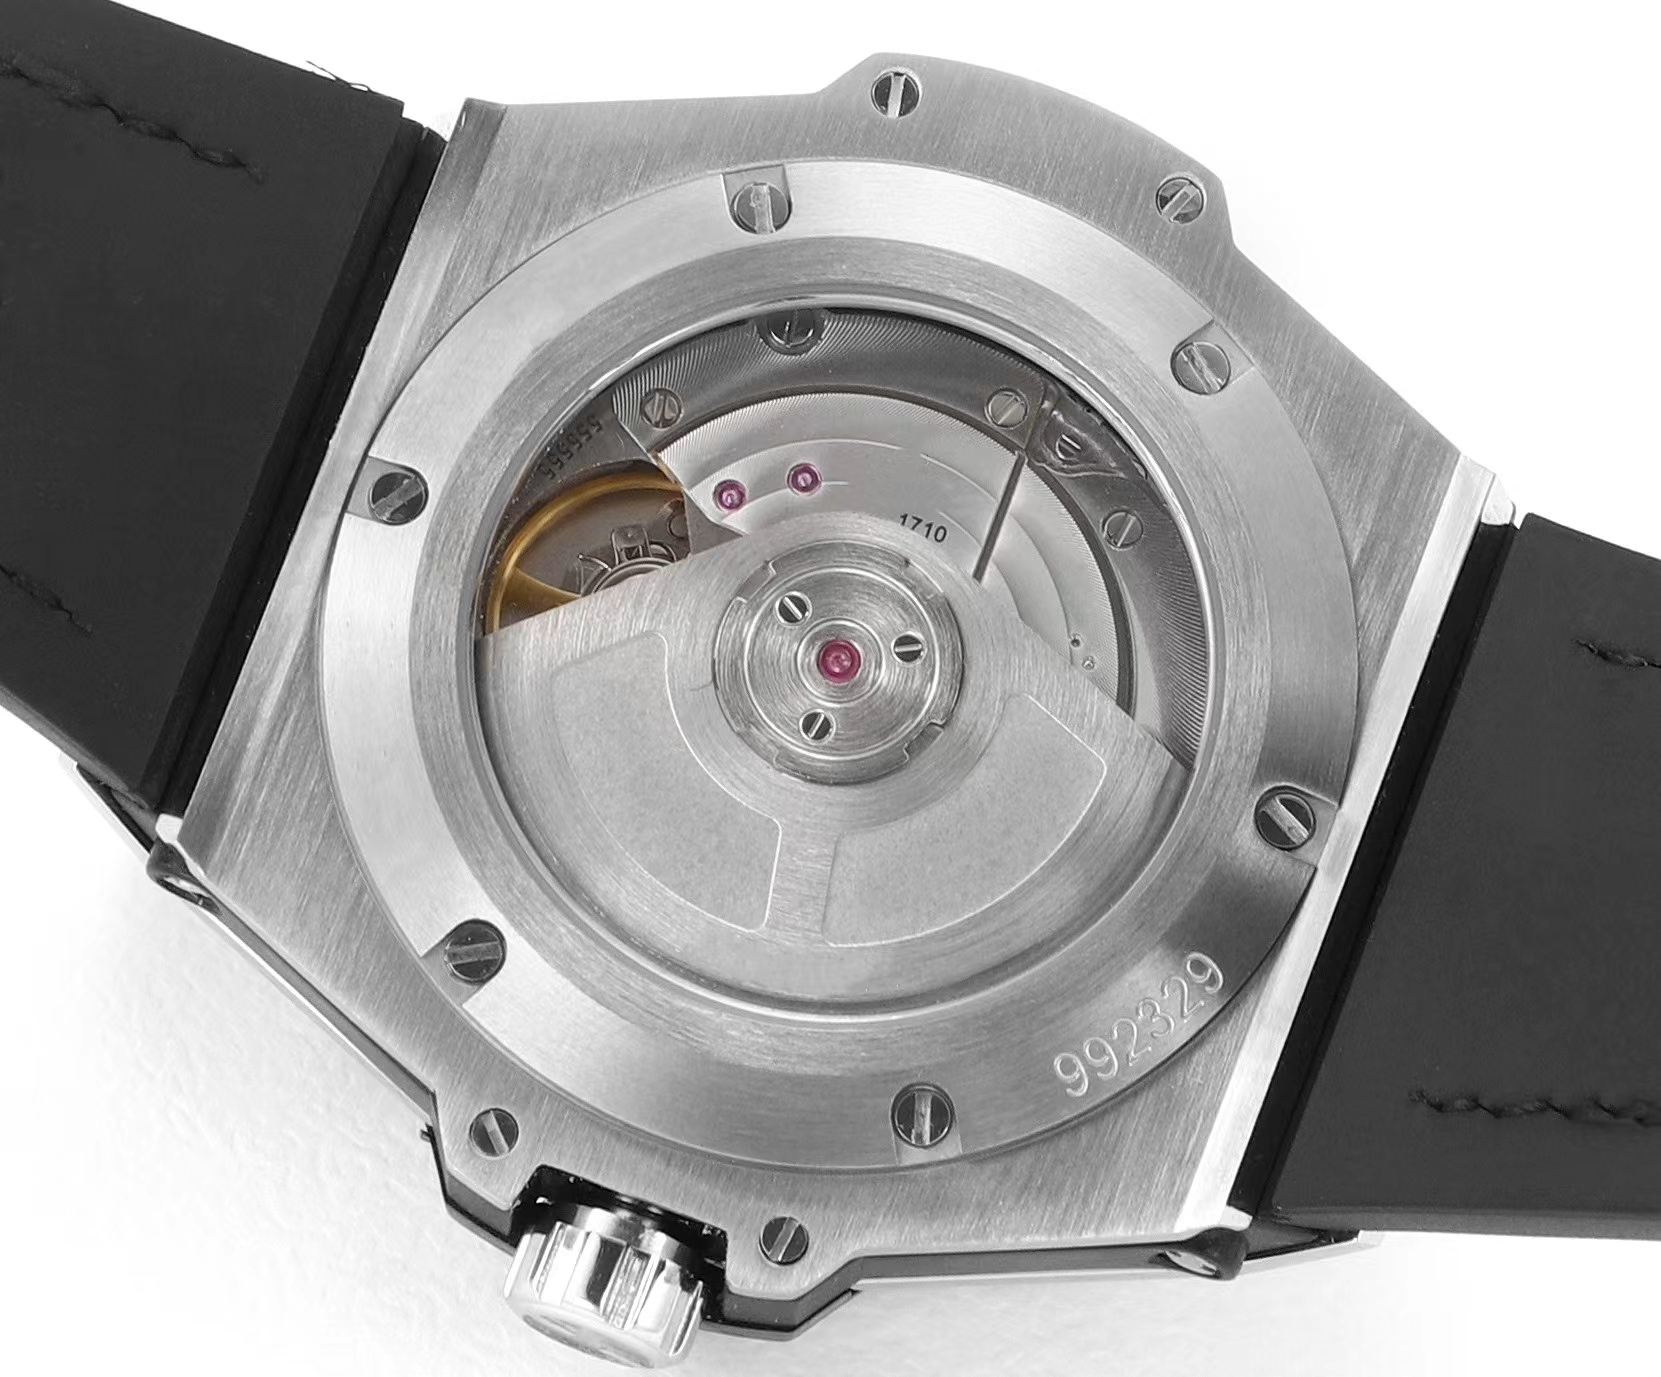 Unisex lüks mekanik saat Gümüş kadran, elmas ile 39mm mavi kayış ve gerçek süper kıdemli hareket 1710 tam otomatik zincir romantik gökkuşağı saati